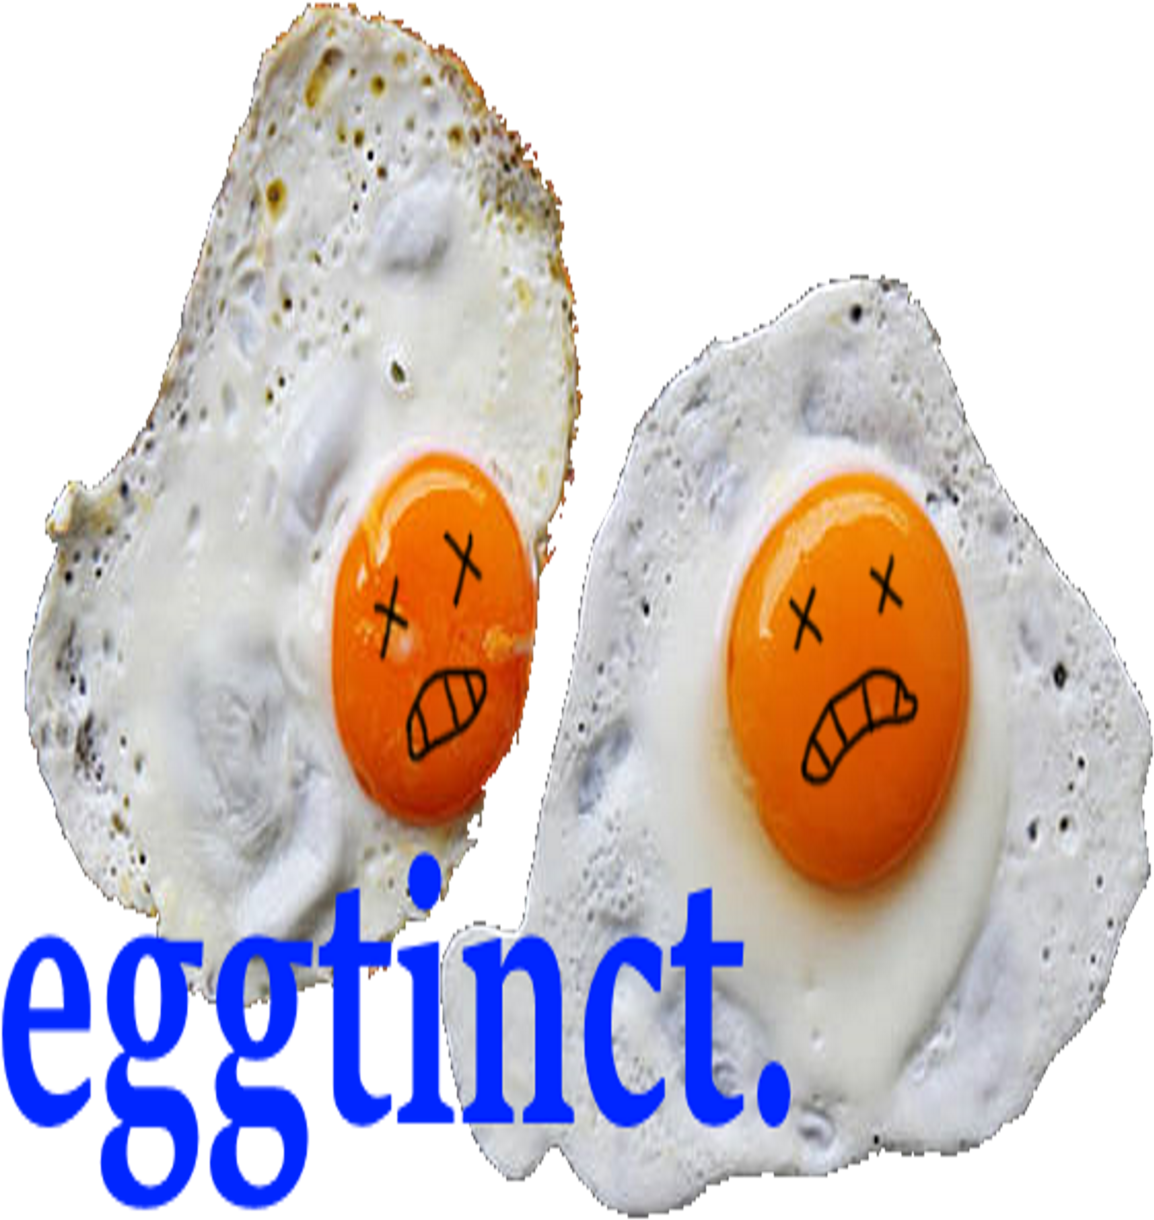 Eggtinct Egg Pun Artist Artist On Tumblr Cknightleyart - Smile (1280x1280)